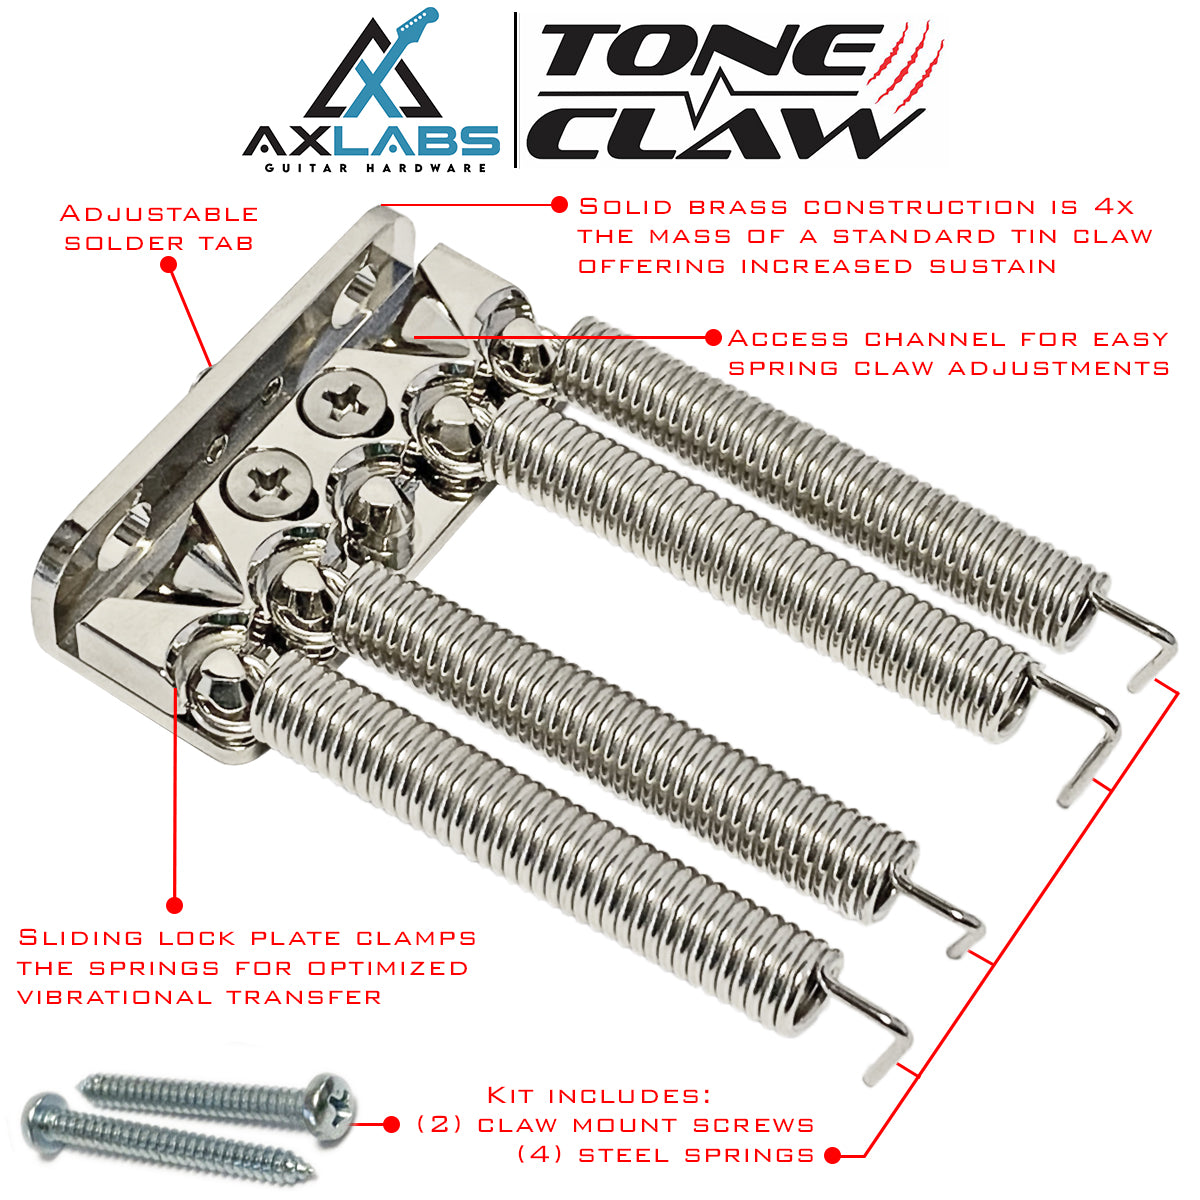 AxLabs Tone Claw Locking Spring Claw